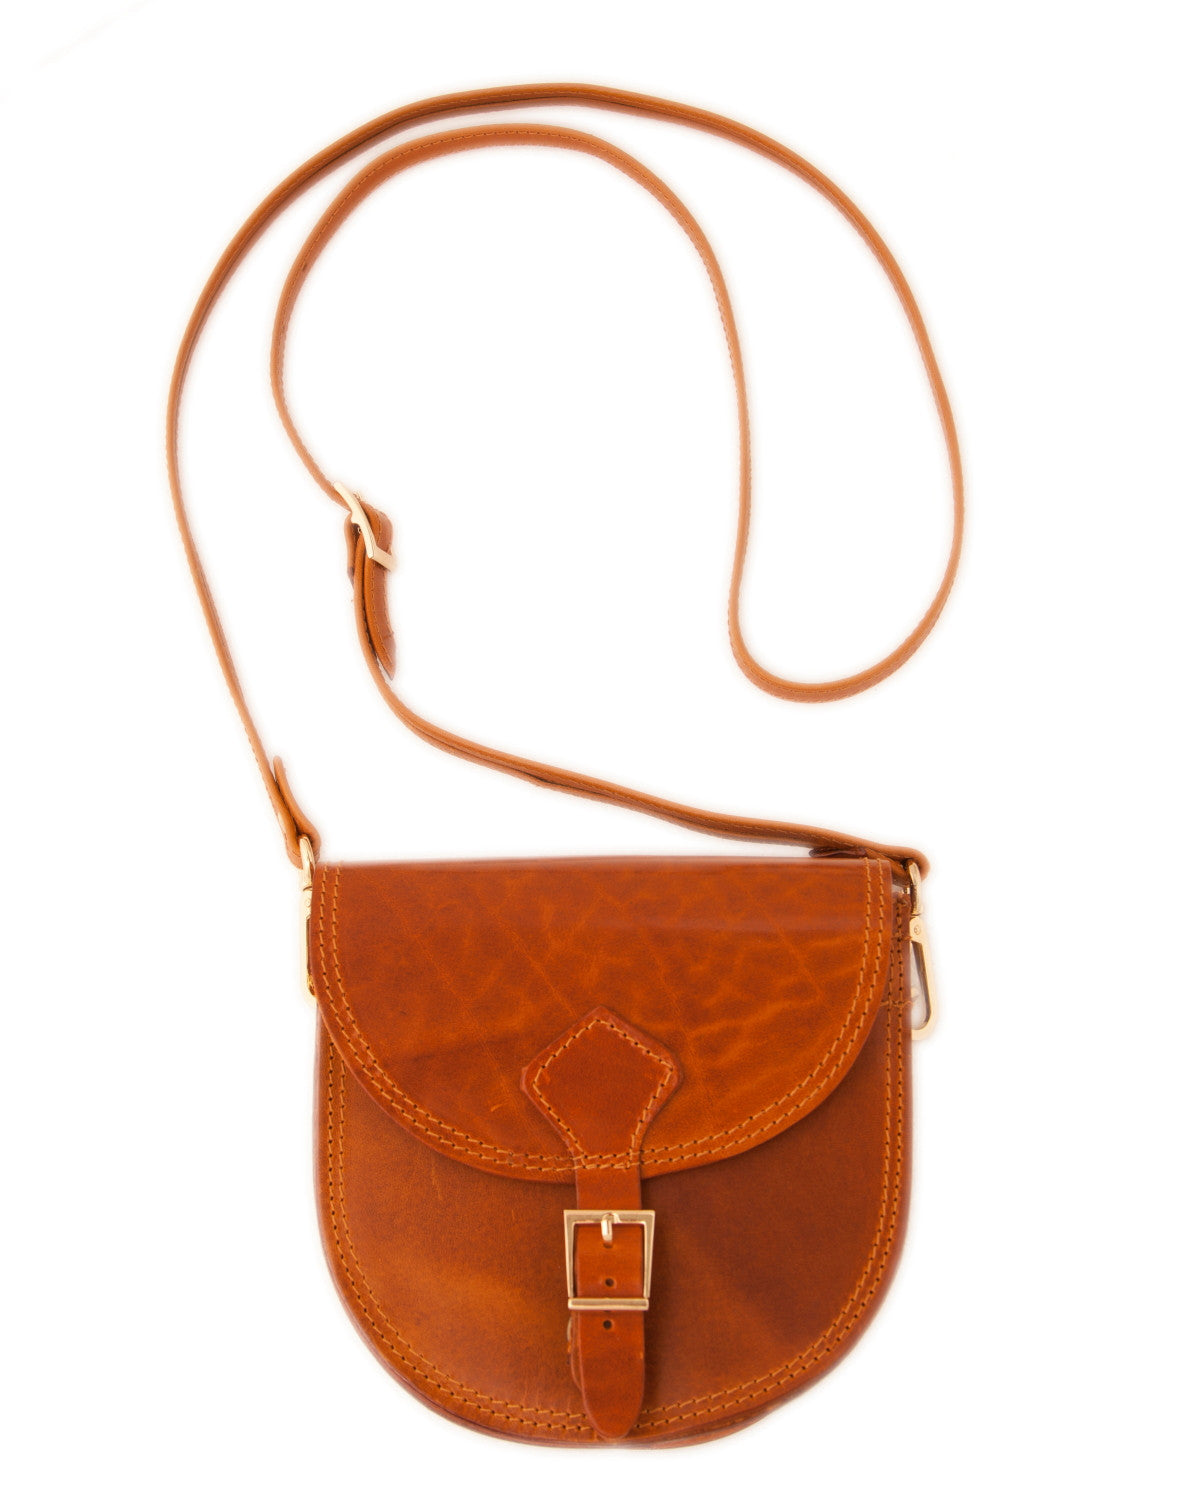 Handmade leather handbag wt/89